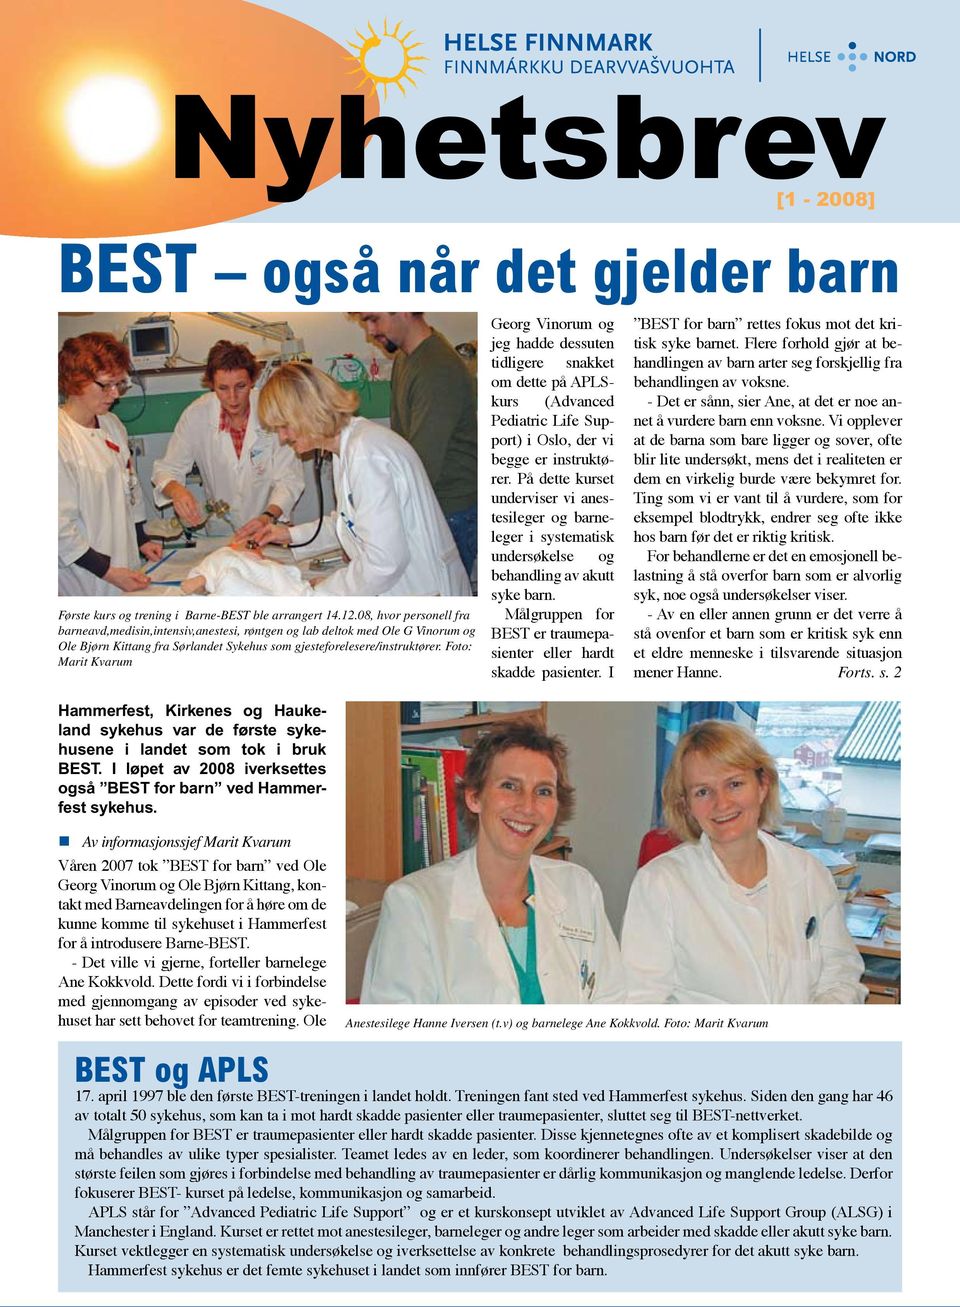 Foto: Marit Kvarum Hammerfest, Kirkenes og Haukeland sykehus var de første sykehusene i landet som tok i bruk BEST. I løpet av 2008 iverksettes også BEST for barn ved Hammerfest sykehus.